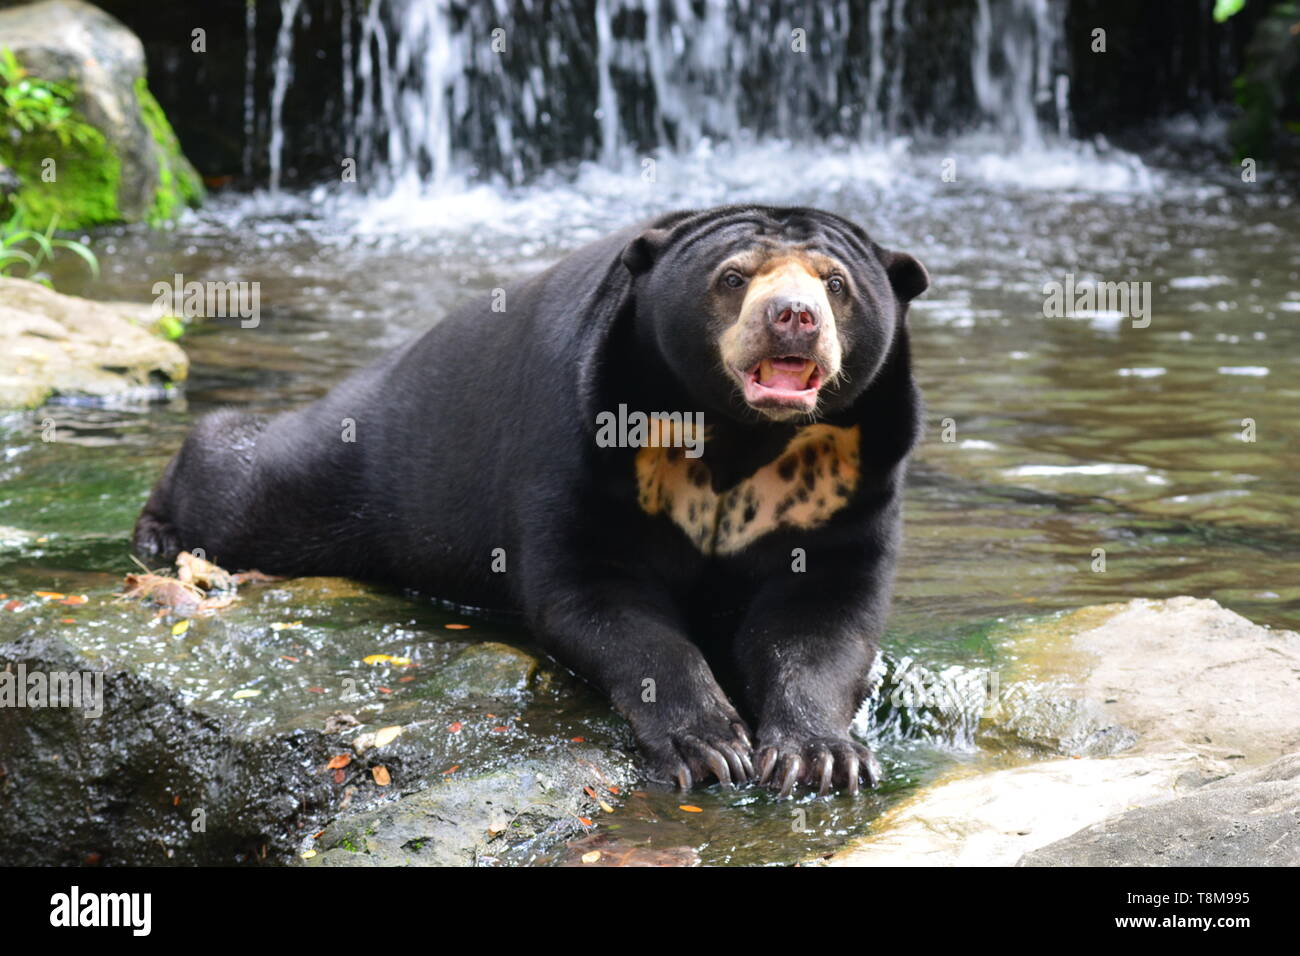 Malayan Sun Bear (Helarctos malayanus) in nature Stock Photo